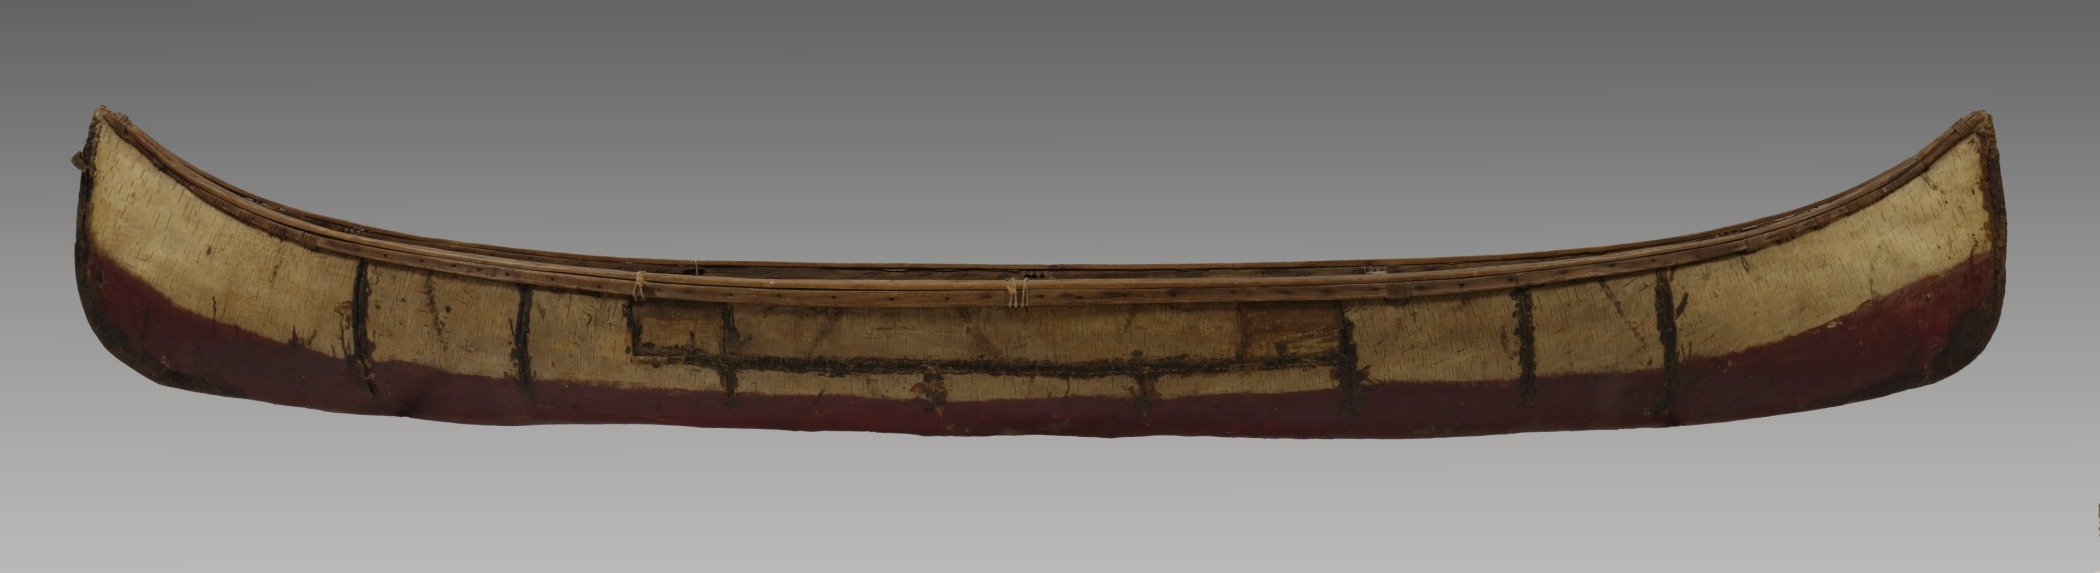 Object 19 Canoe.jpg